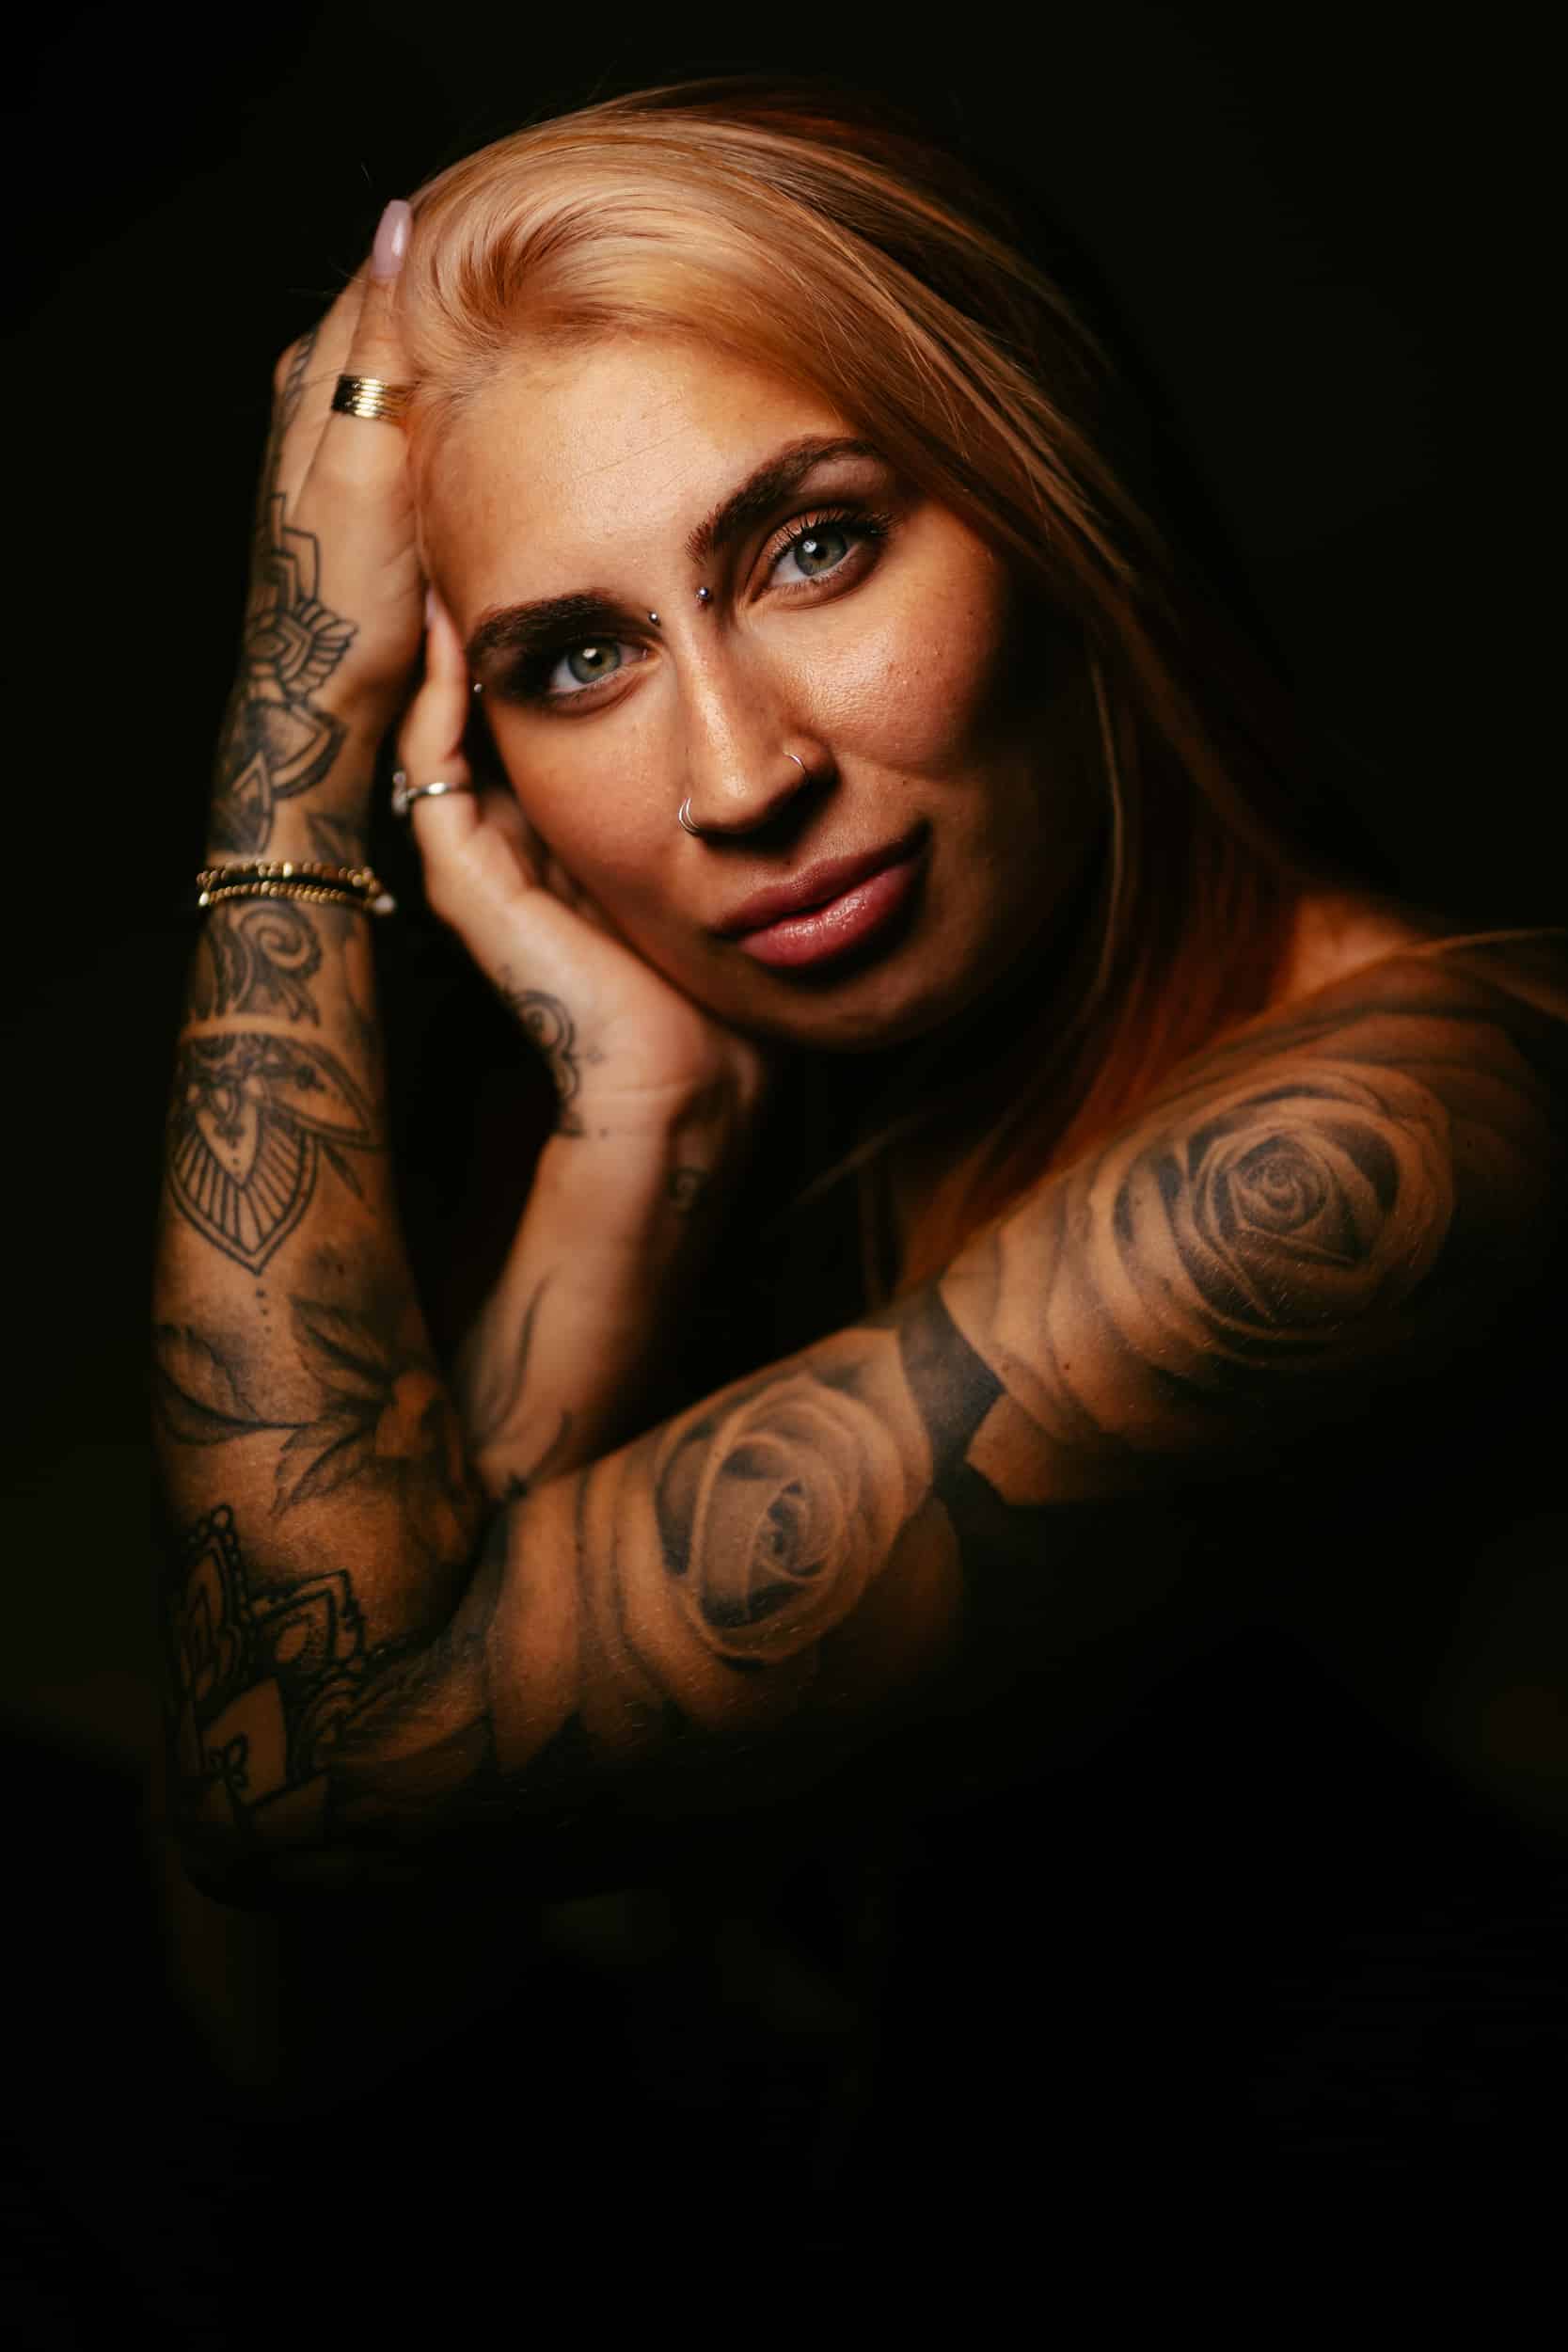 Een professionele portretfotograaf die een vrouw met tatoeages vastlegt tijdens een prachtige fotosessie.